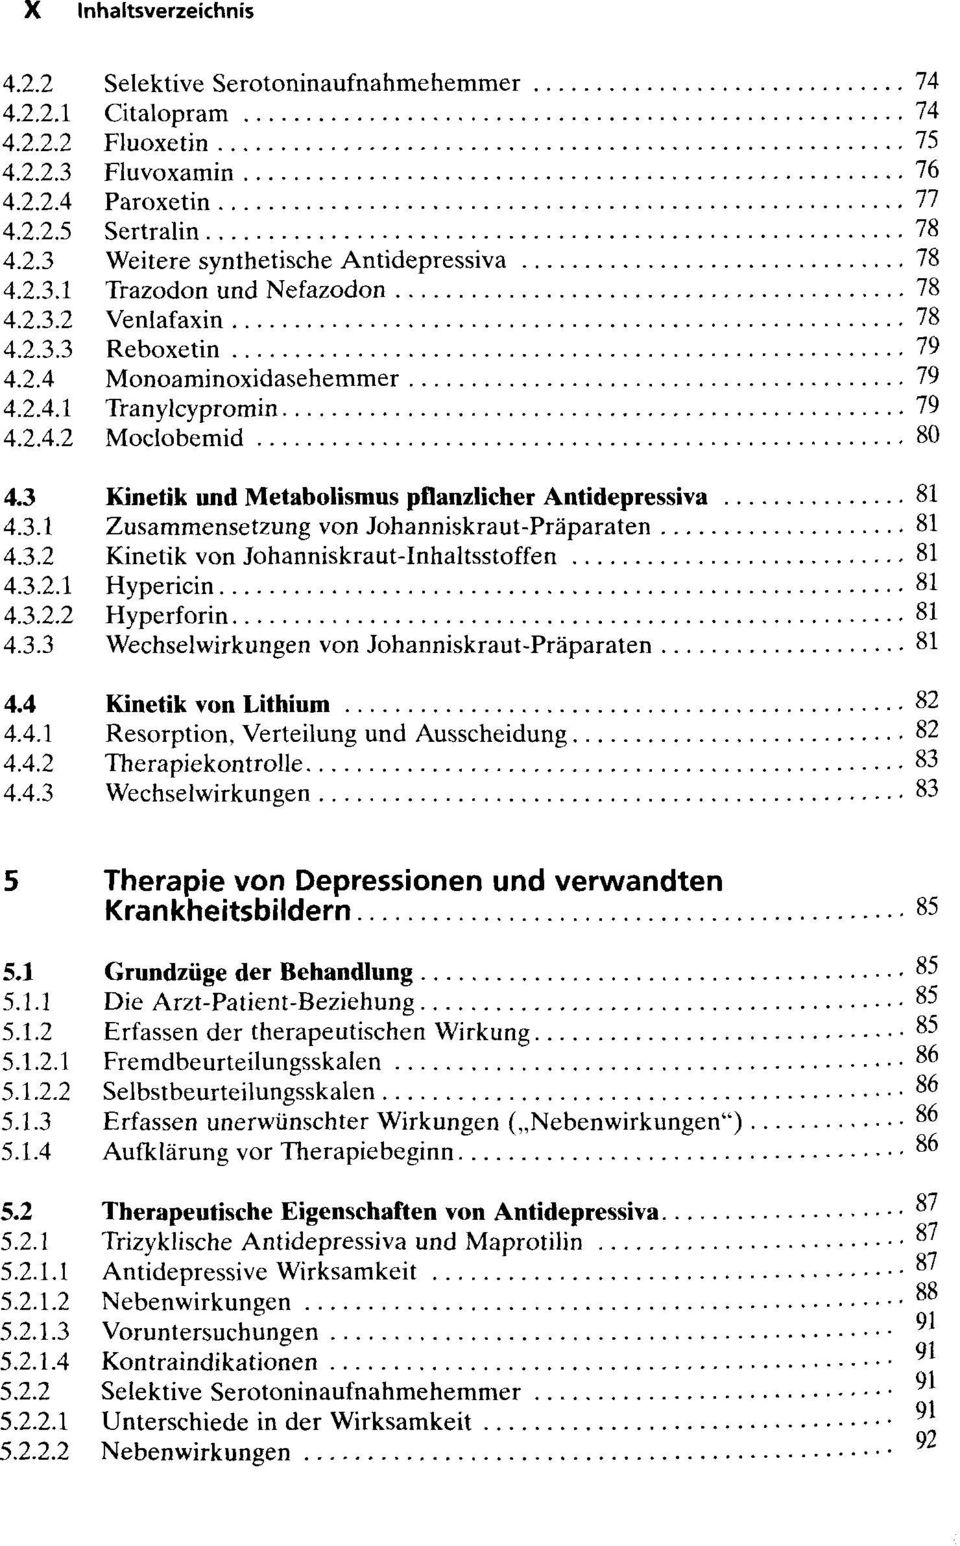 3 Kinetik und Metabolismus pflanzlicher Antidepressiva SI 4.3.1 Zusammensetzung von Johanniskraut-Praparaten 81 4.3.2 Kinetik von Johanniskraut-Inhaltsstoffen 81 4.3.2.1 Hypericin 81 4.3.2.2 Hyperforin 81 4.